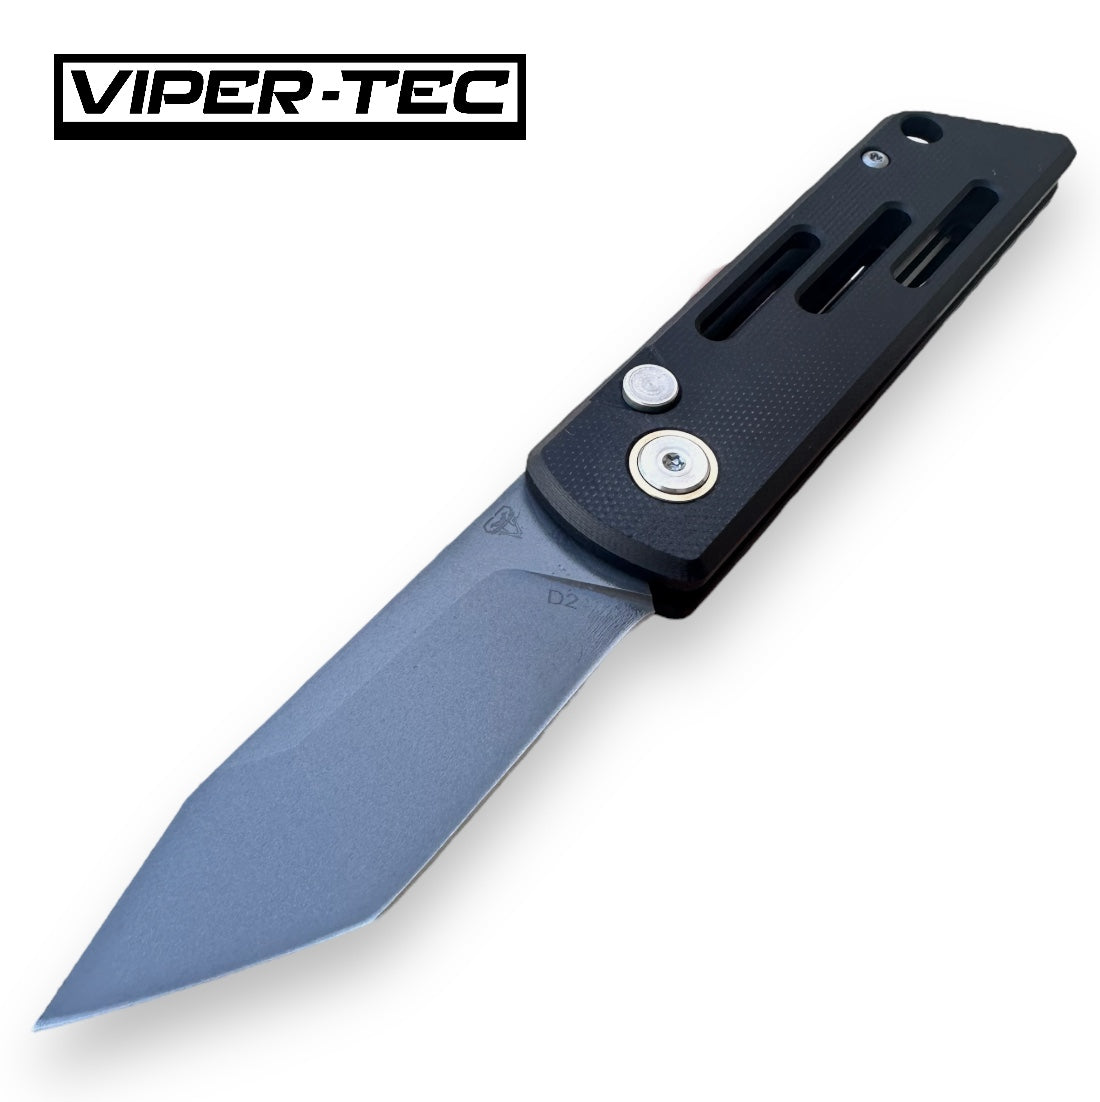 VT Hollow D2 Switchblade Knife